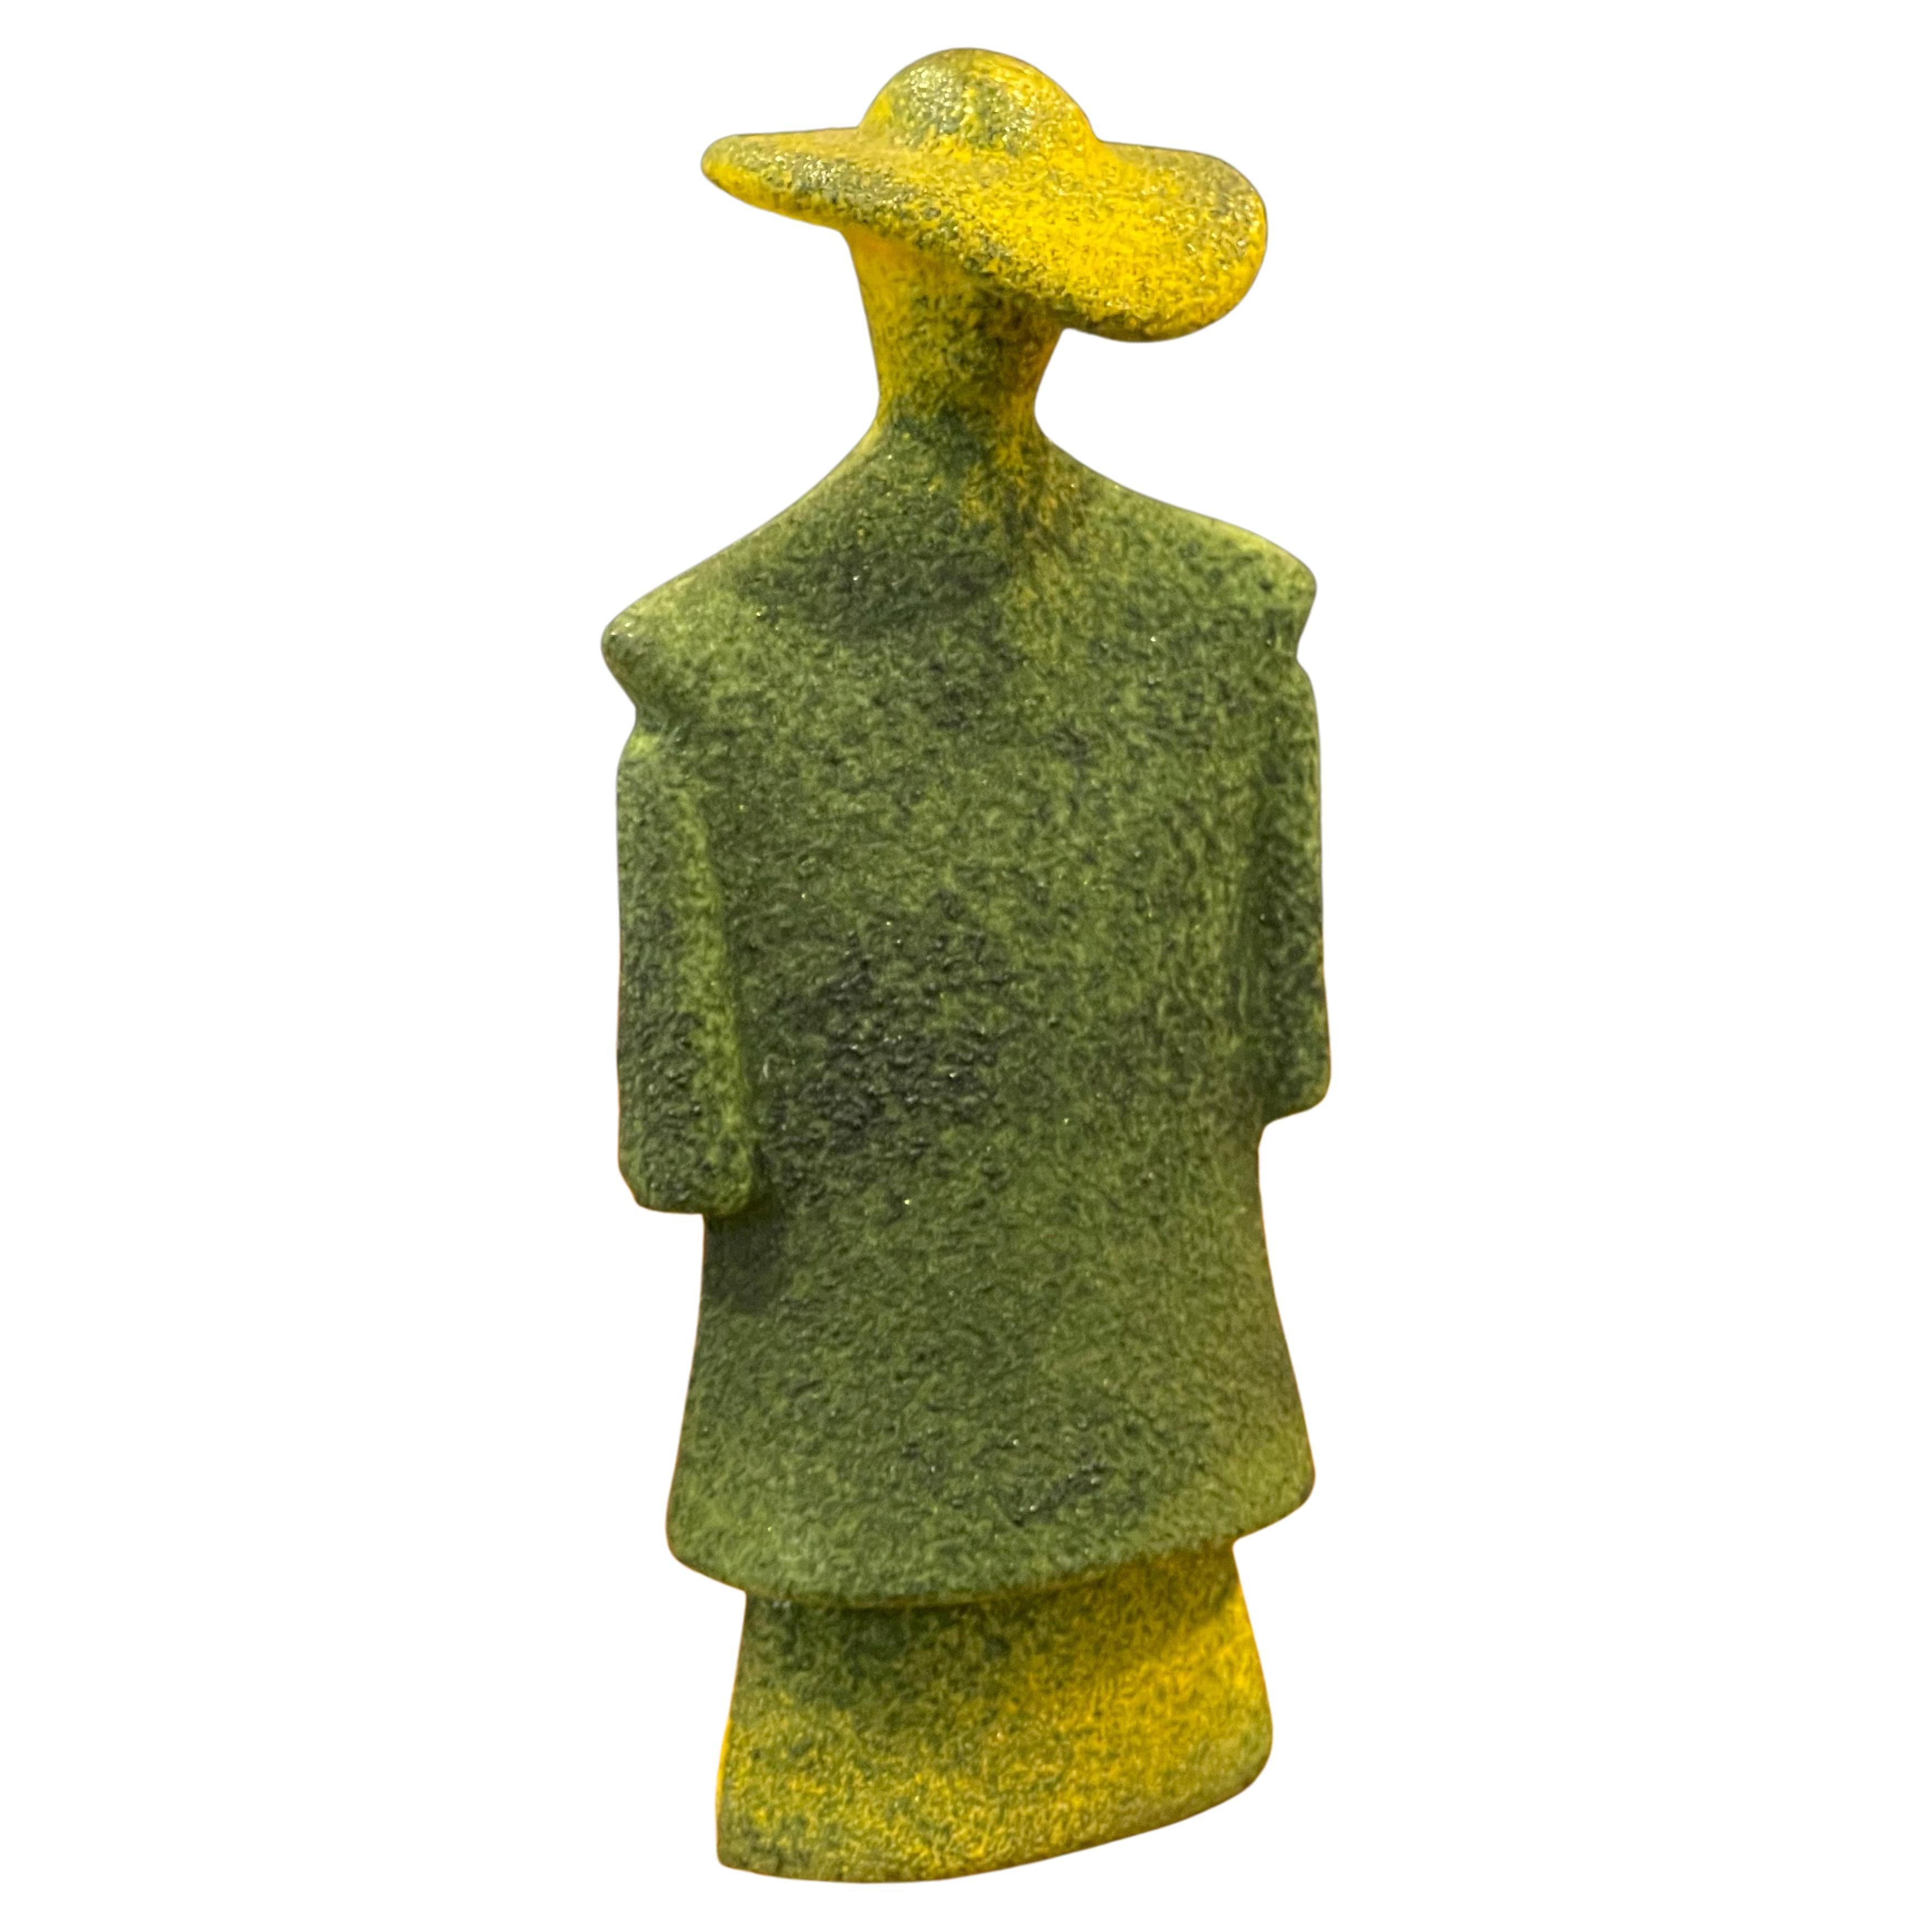 Poncho Green Art Glass Catwalk Sculpture by Kjell Engman for Kosta Boda Sweden For Sale 9